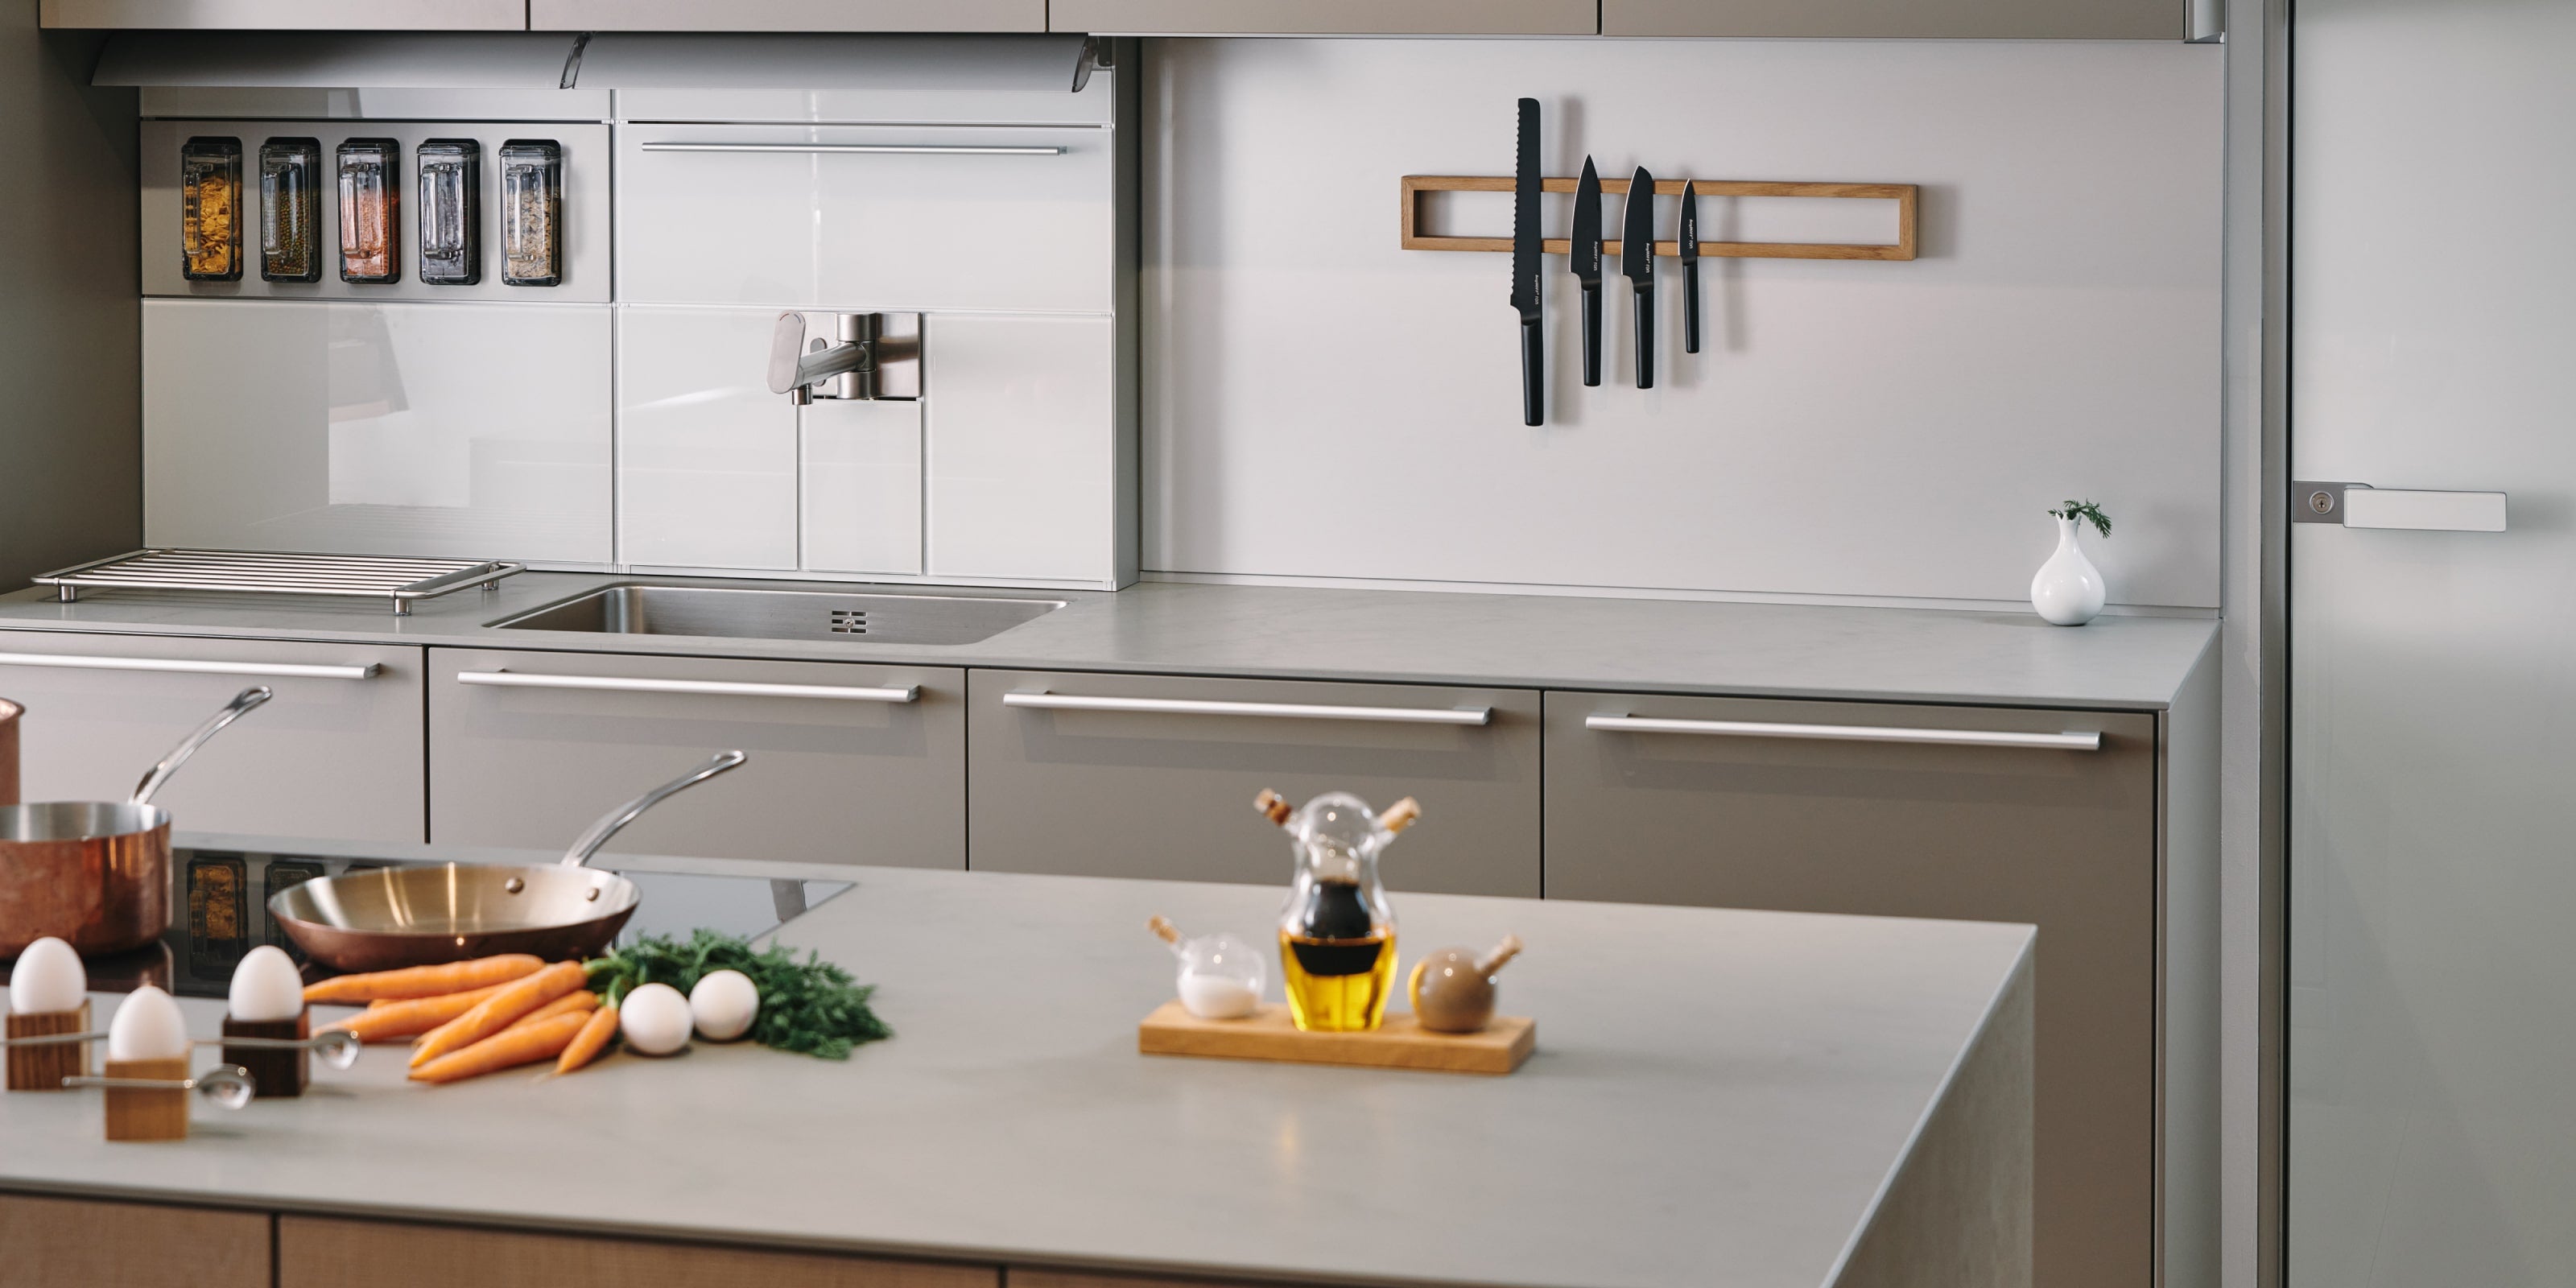 Kuchyň v šedé barvě s doplňky značky Clap Design